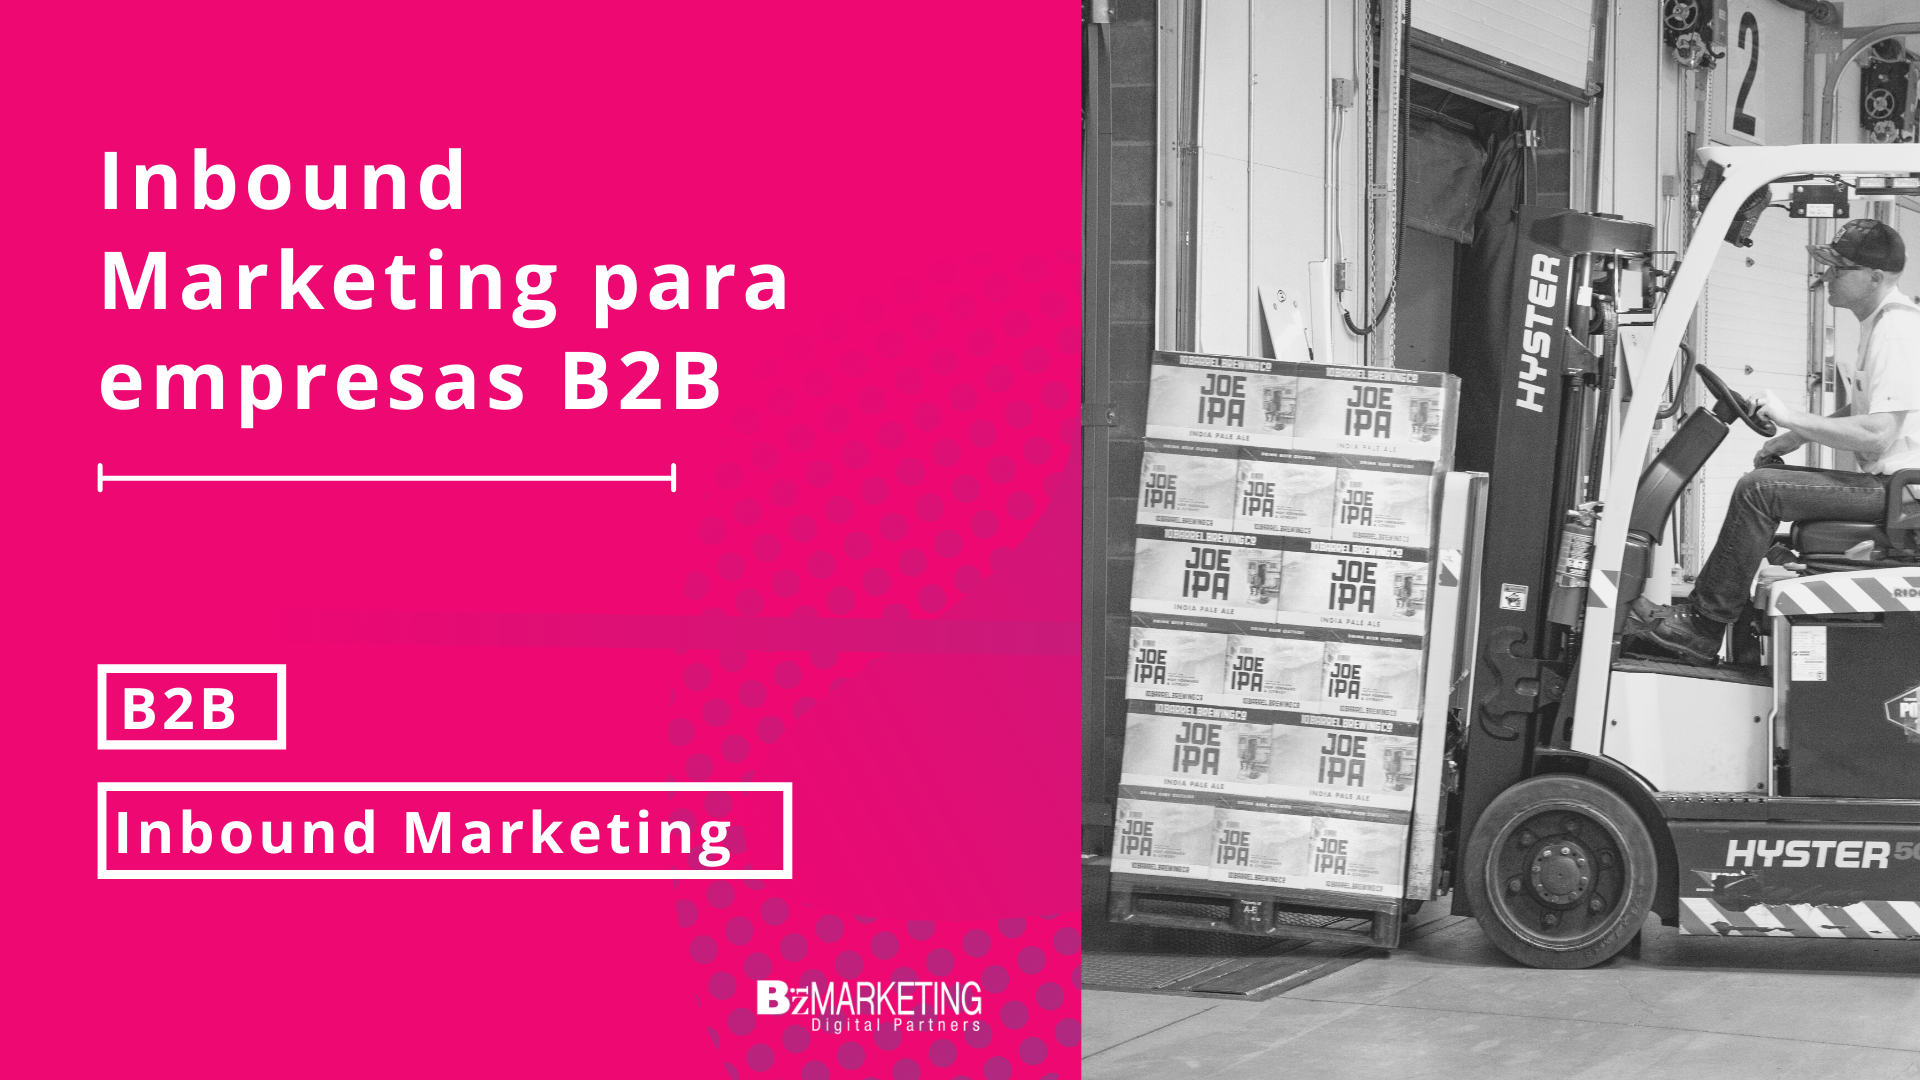 Inbound Marketing para empresas B2B como aplicarlo BizMarketing